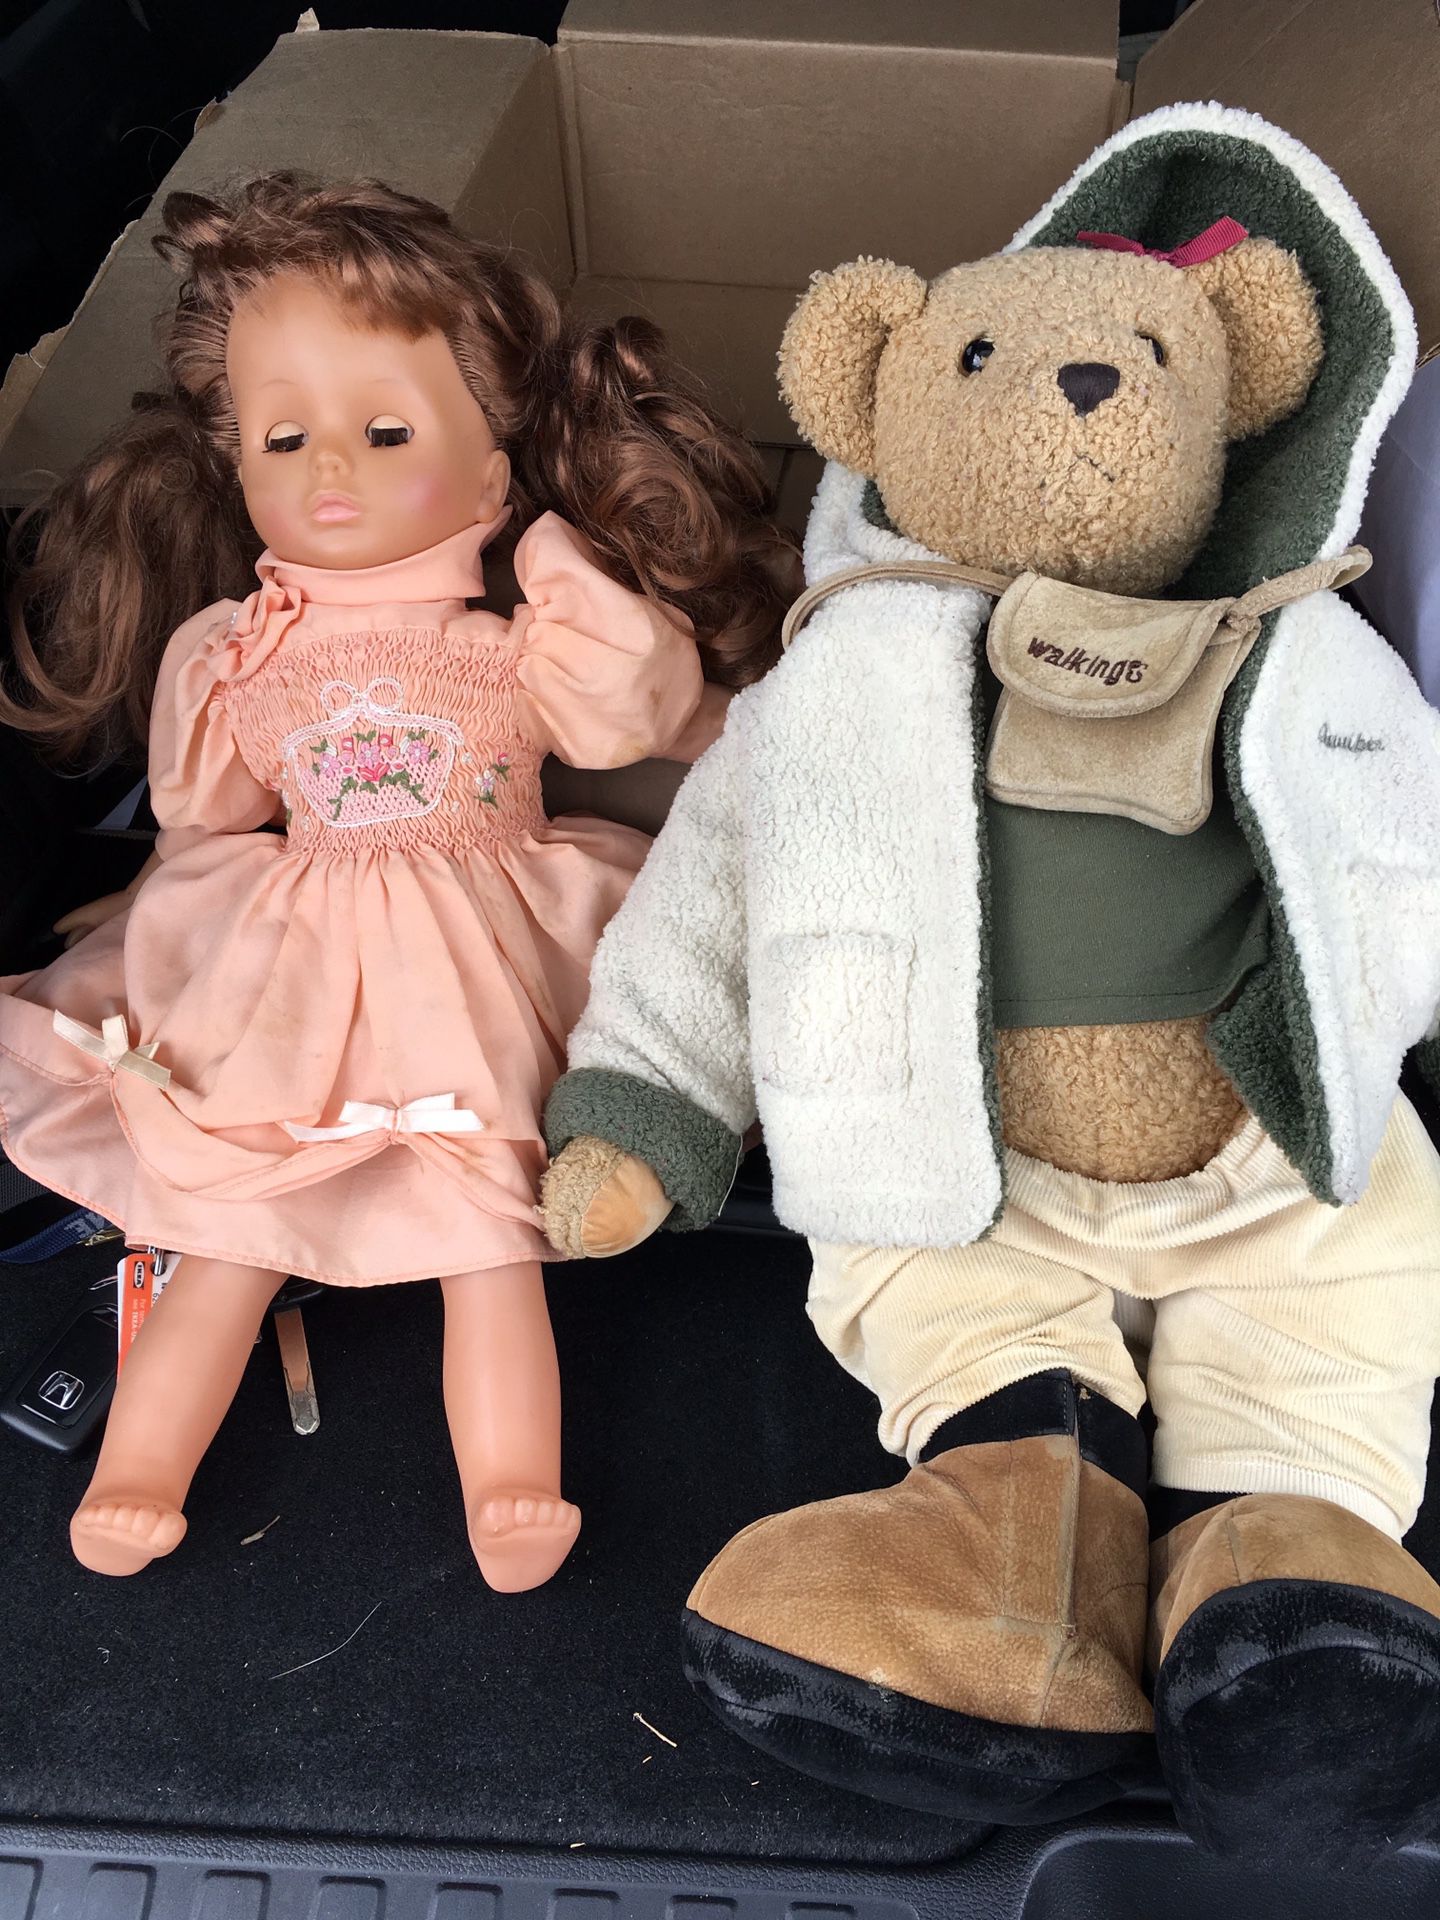 Doll and teddy bear